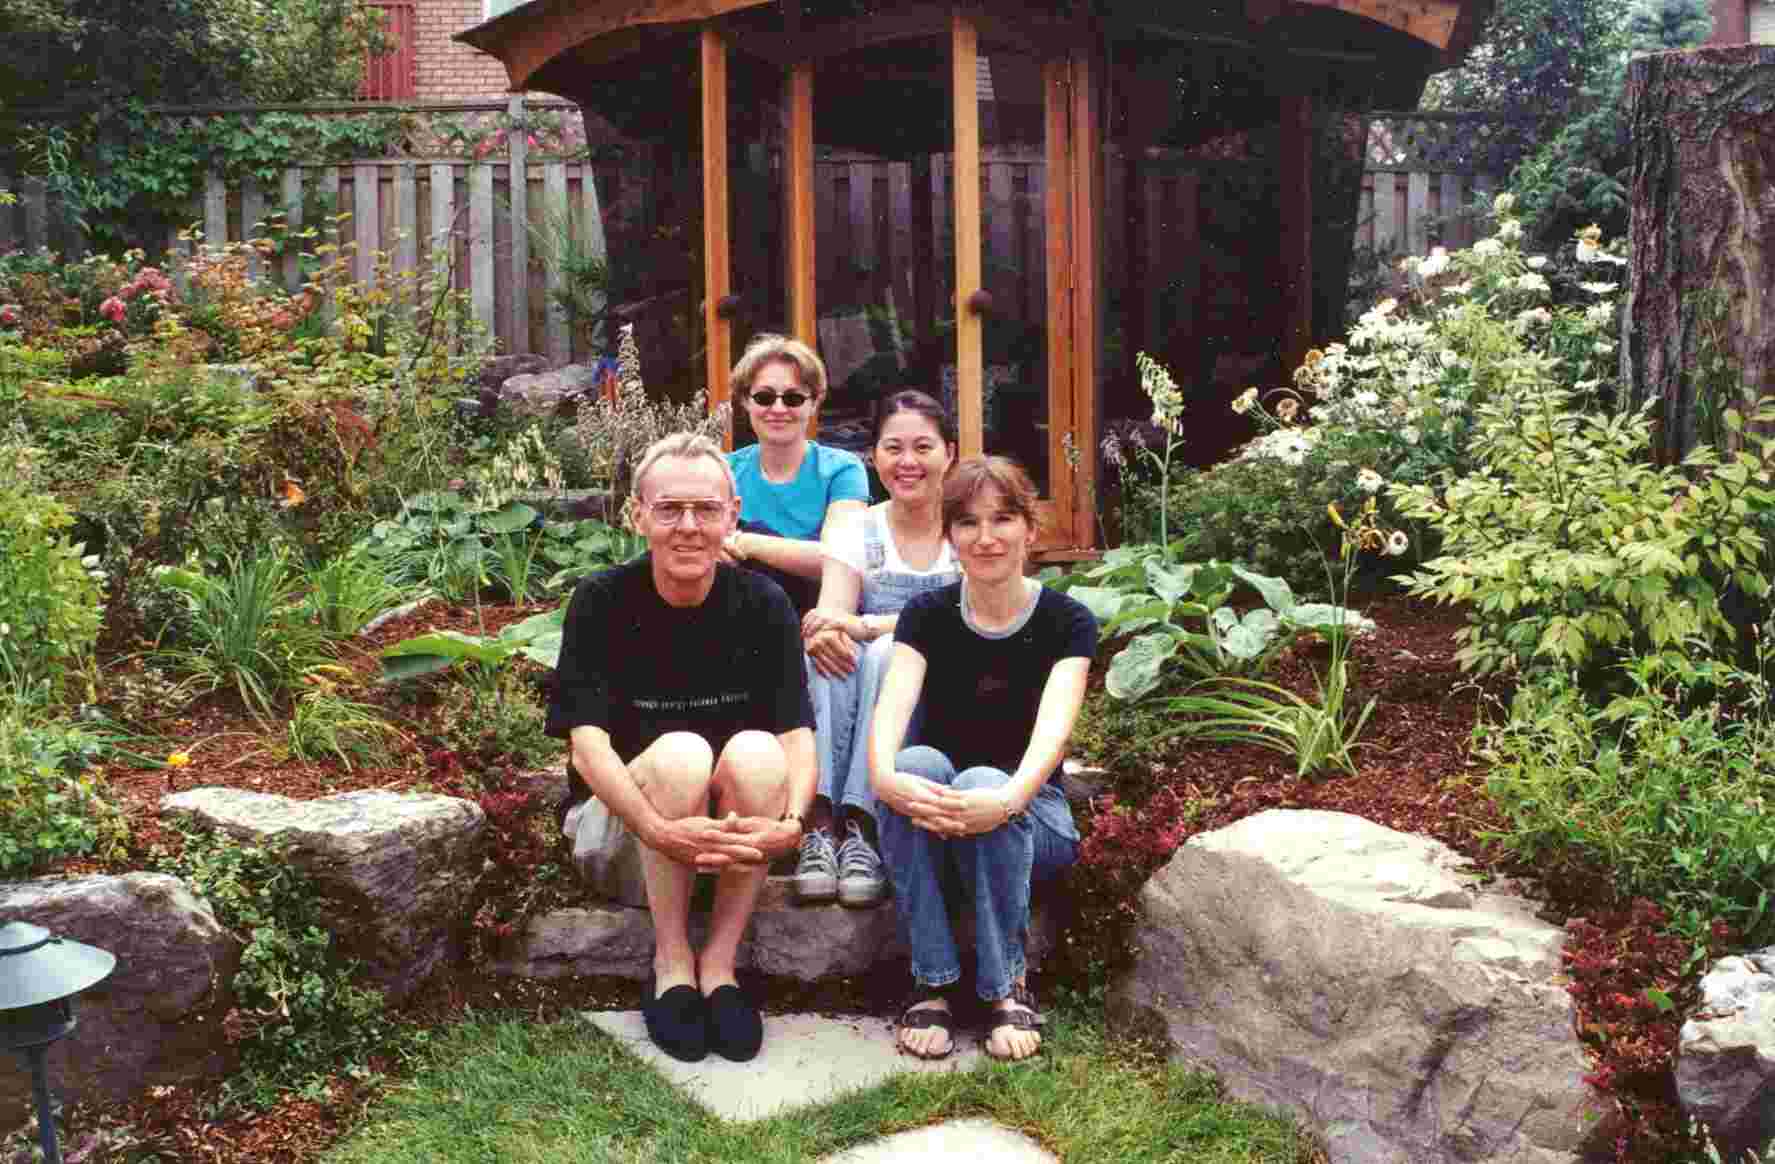 Jarka, Julia, Marina and me in my backyard. [Summer, 2002]